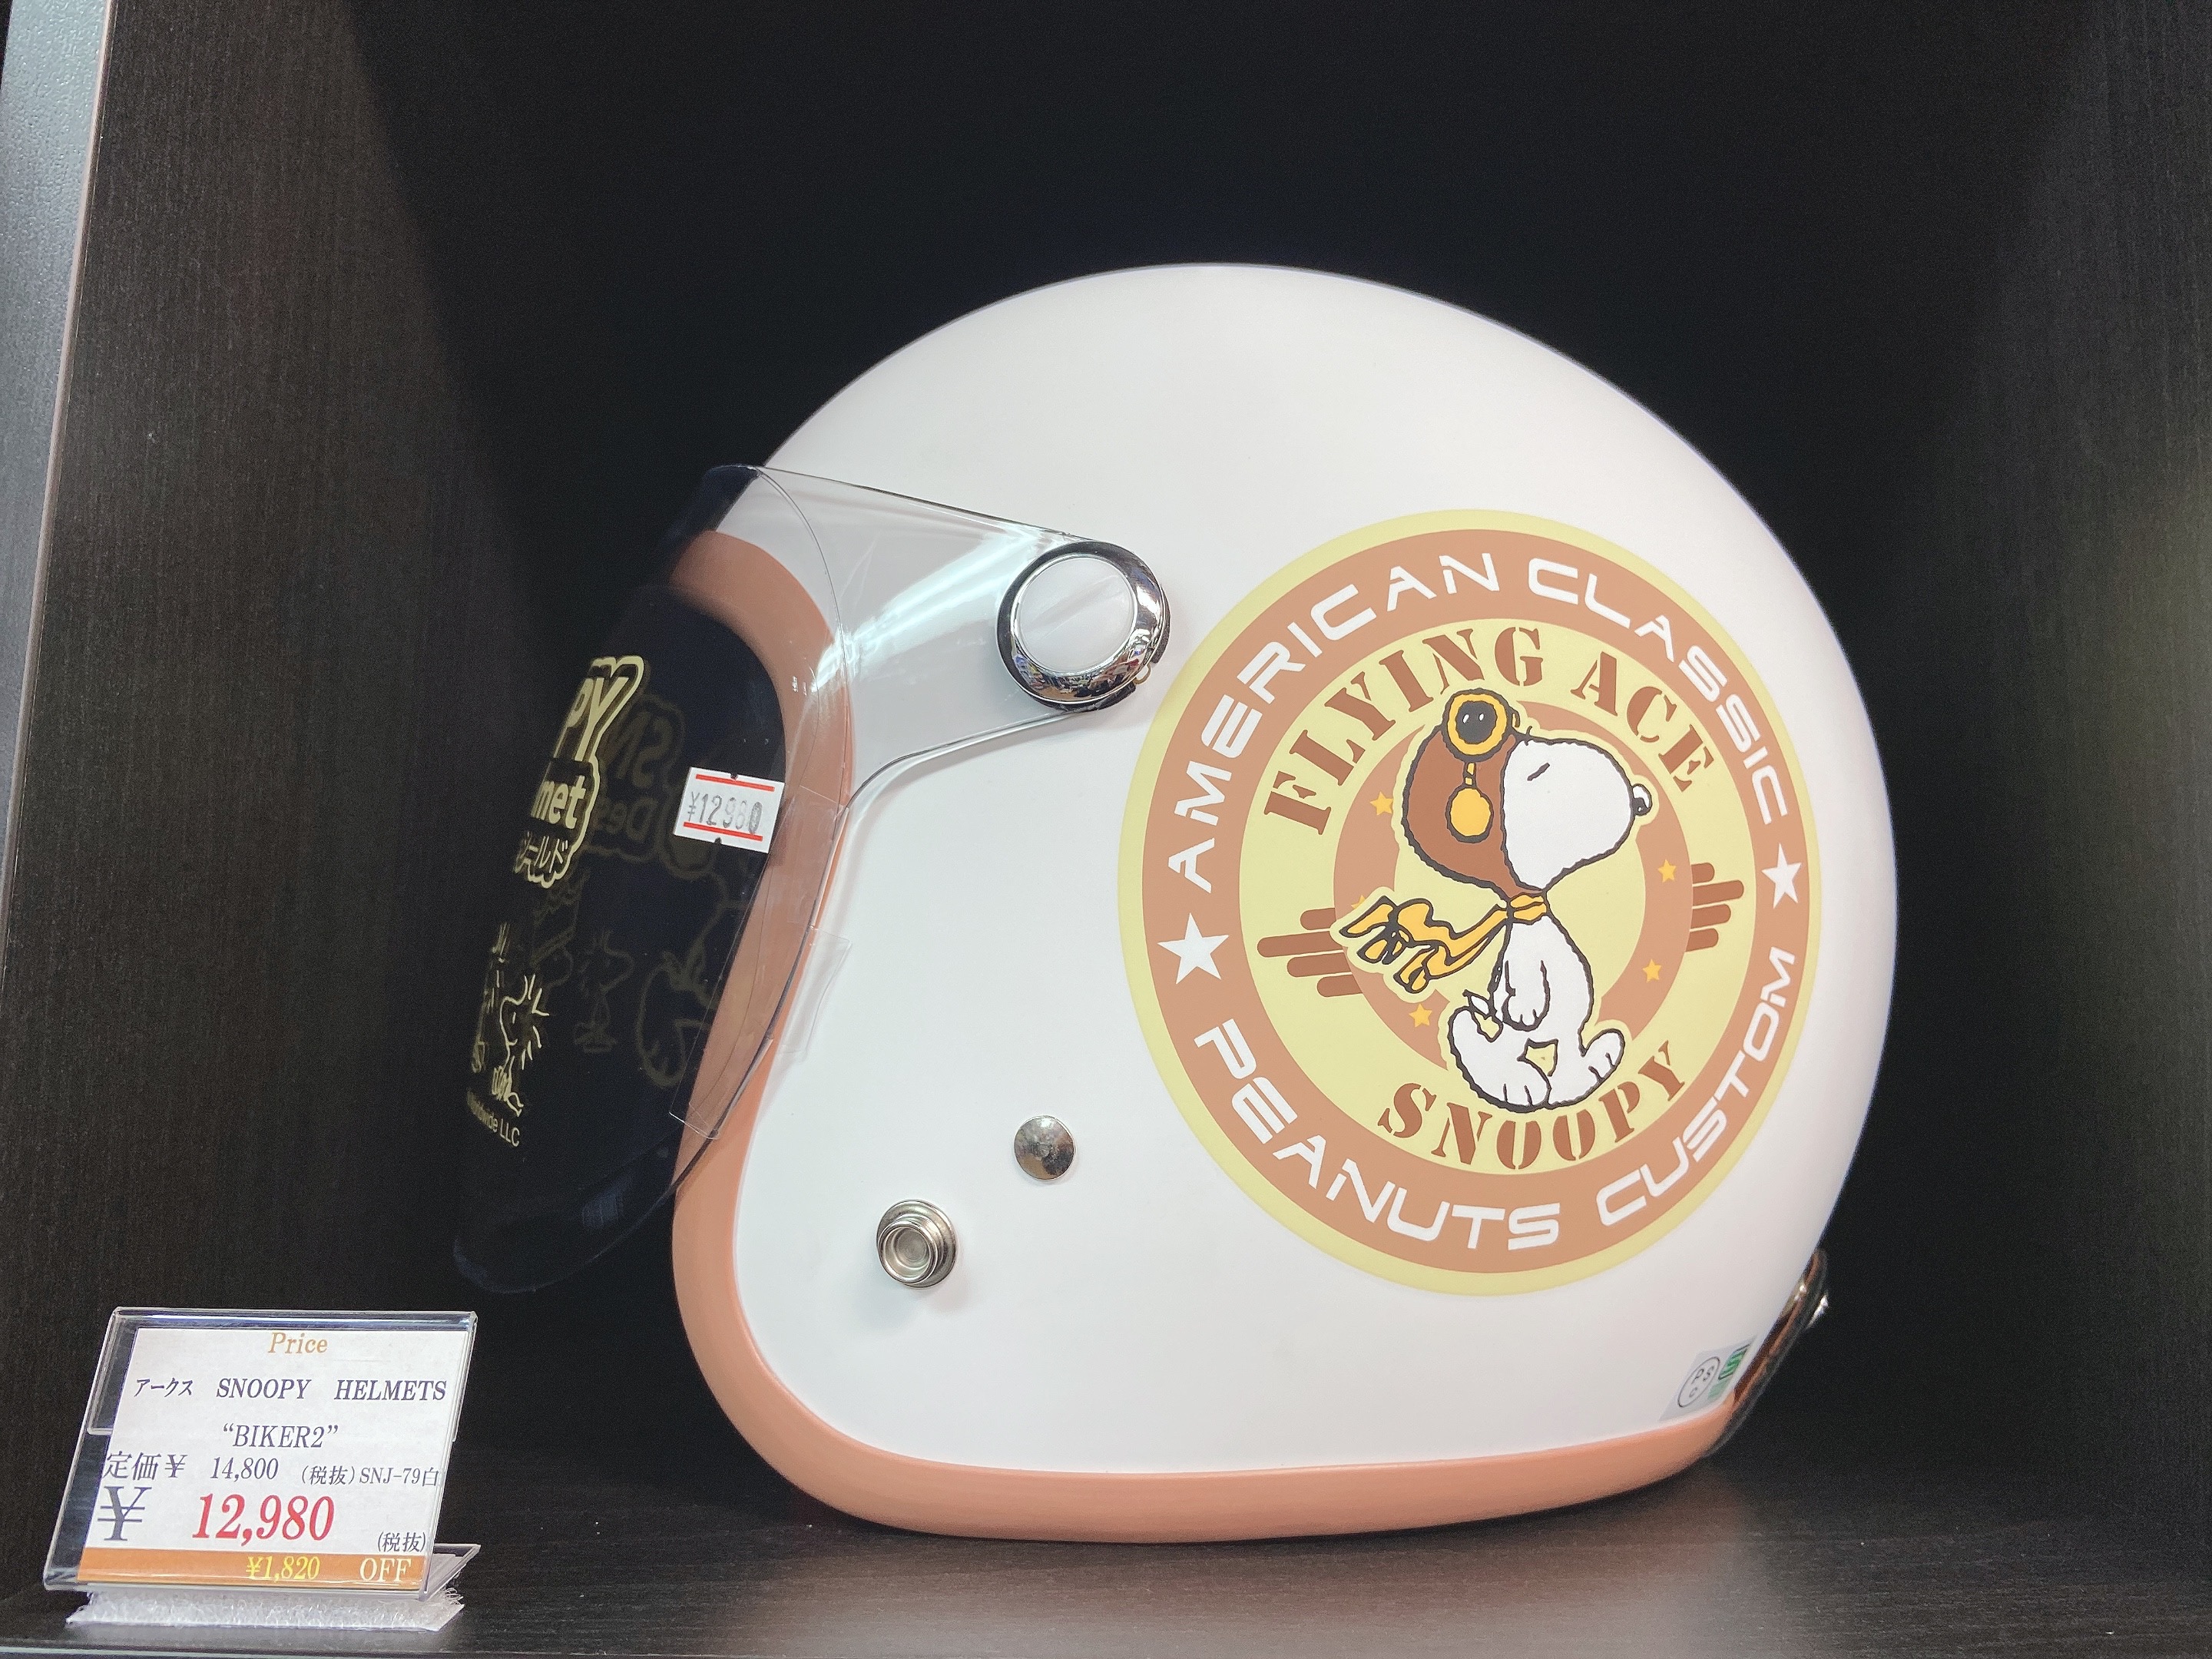 かわいいスヌーピーヘルメットが入荷致しました 最新情報 U Media ユーメディア 中古バイク 新車バイク探しの決定版 神奈川 東京でバイク探すならユーメディア